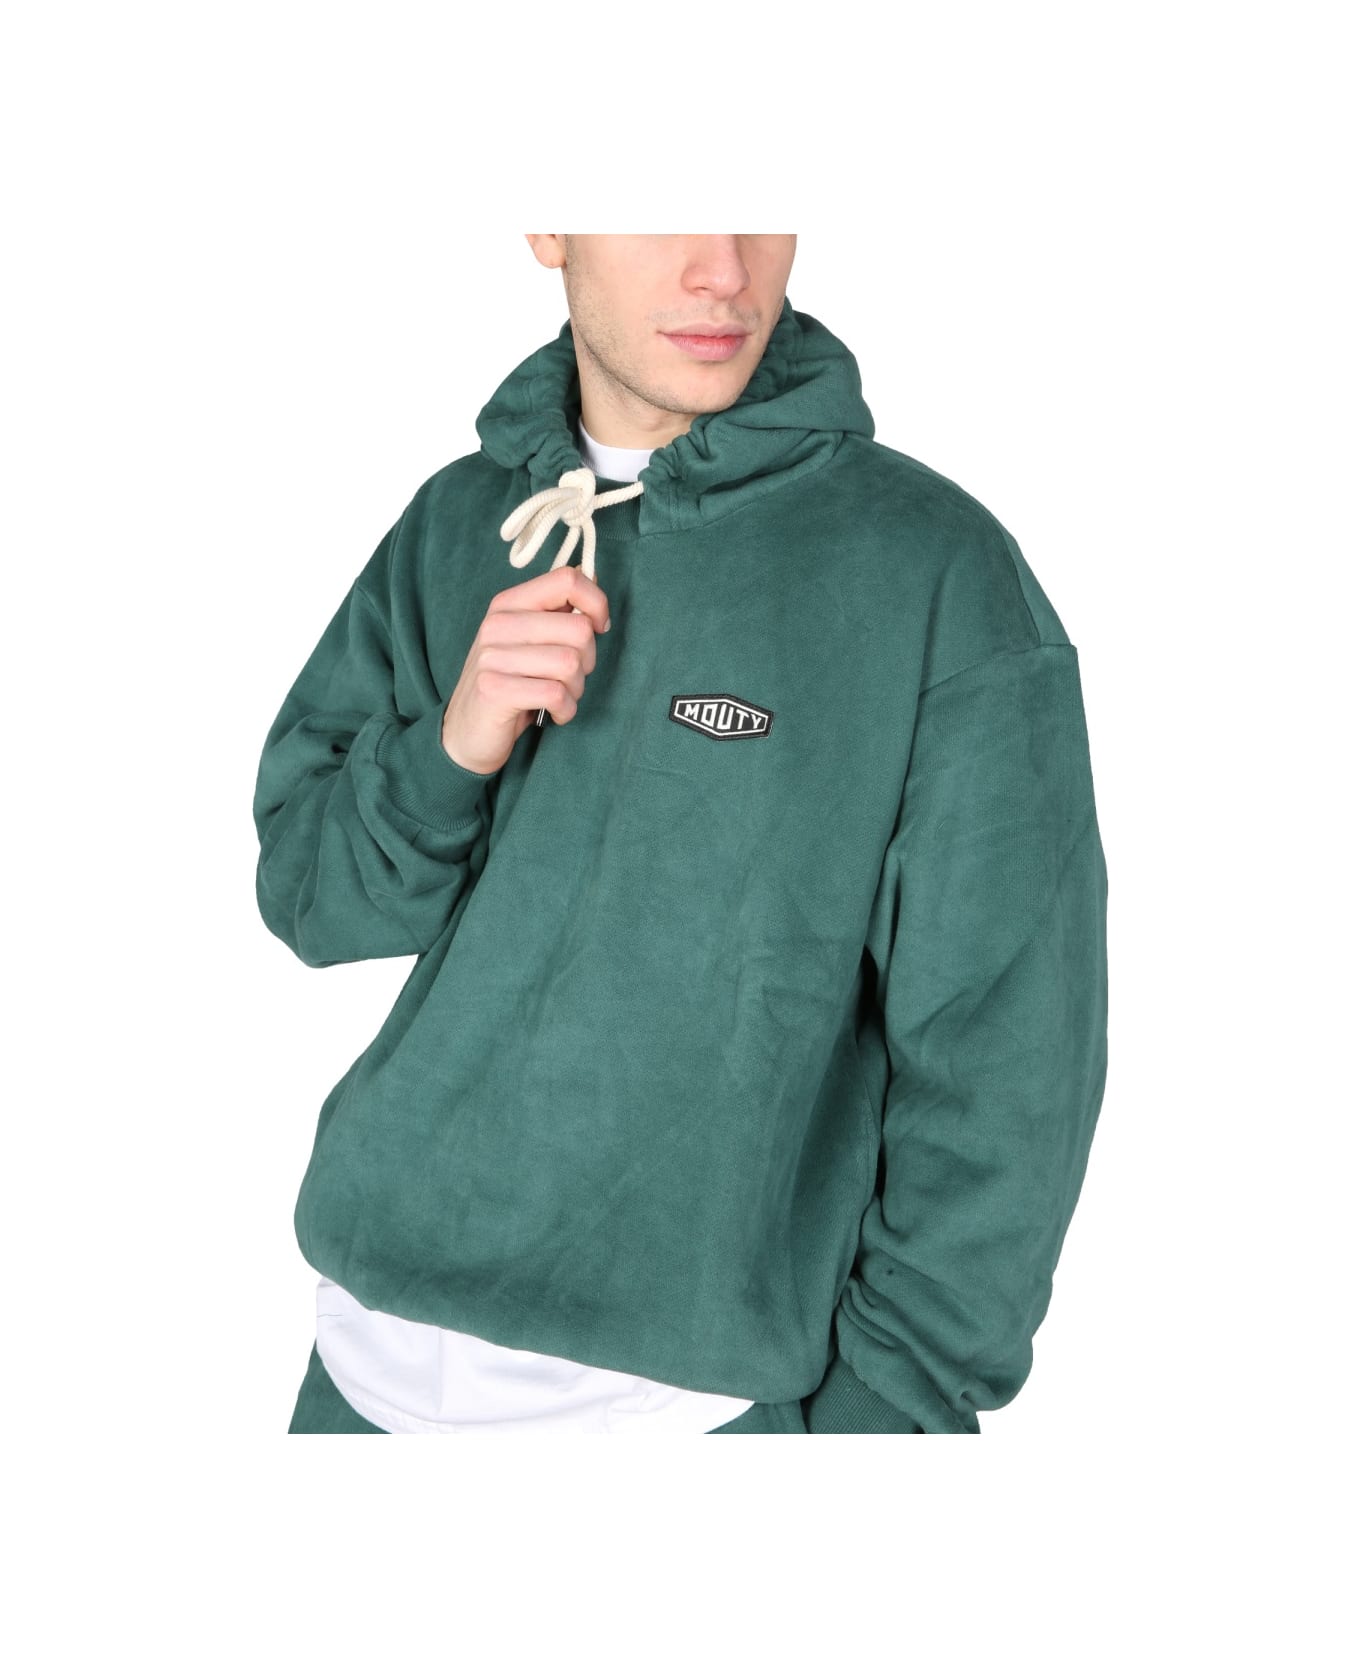 Mouty "dallas" Sweatshirt - GREEN フリース